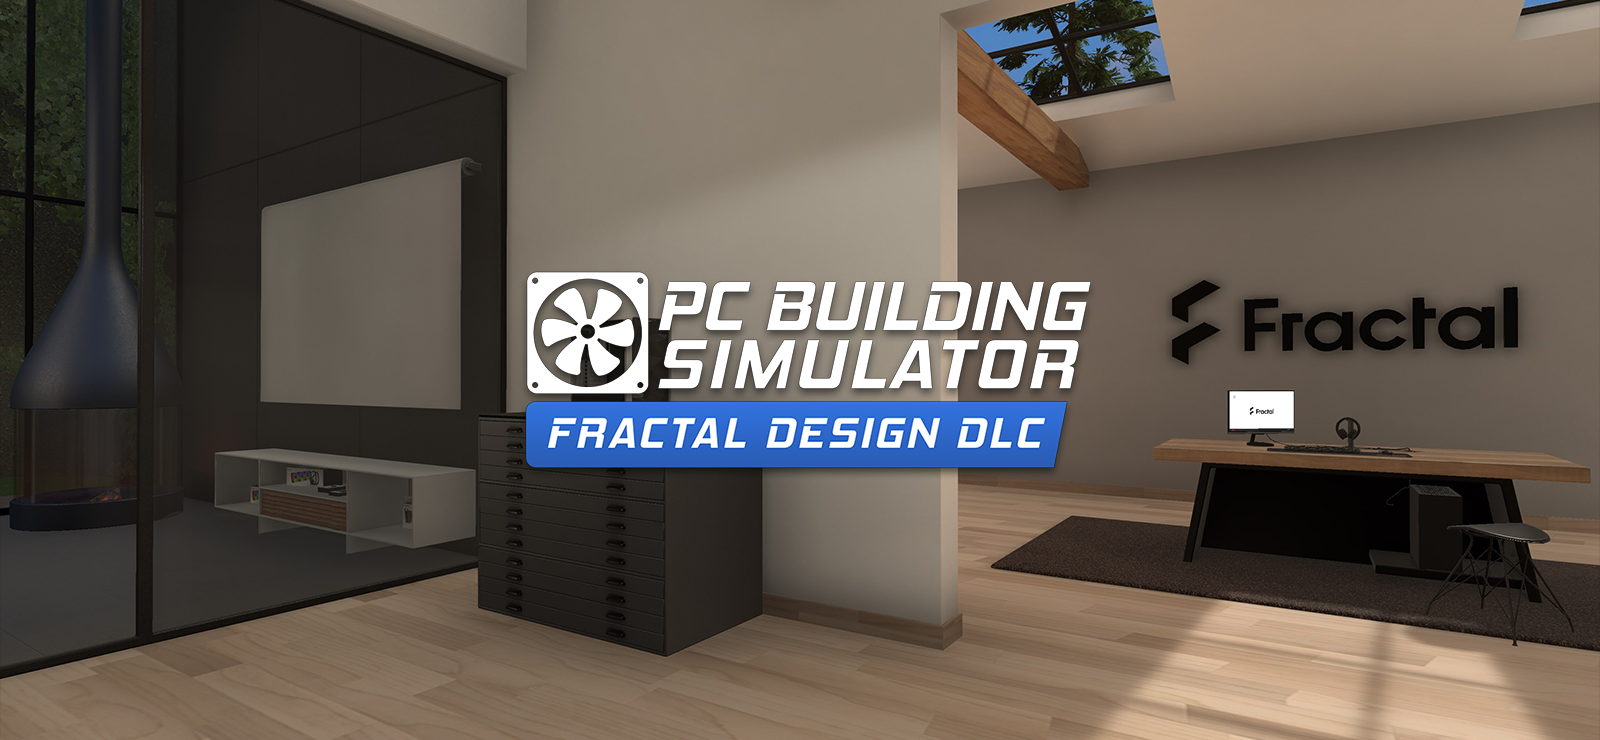 PC Building Simulator - Fractal Workshop